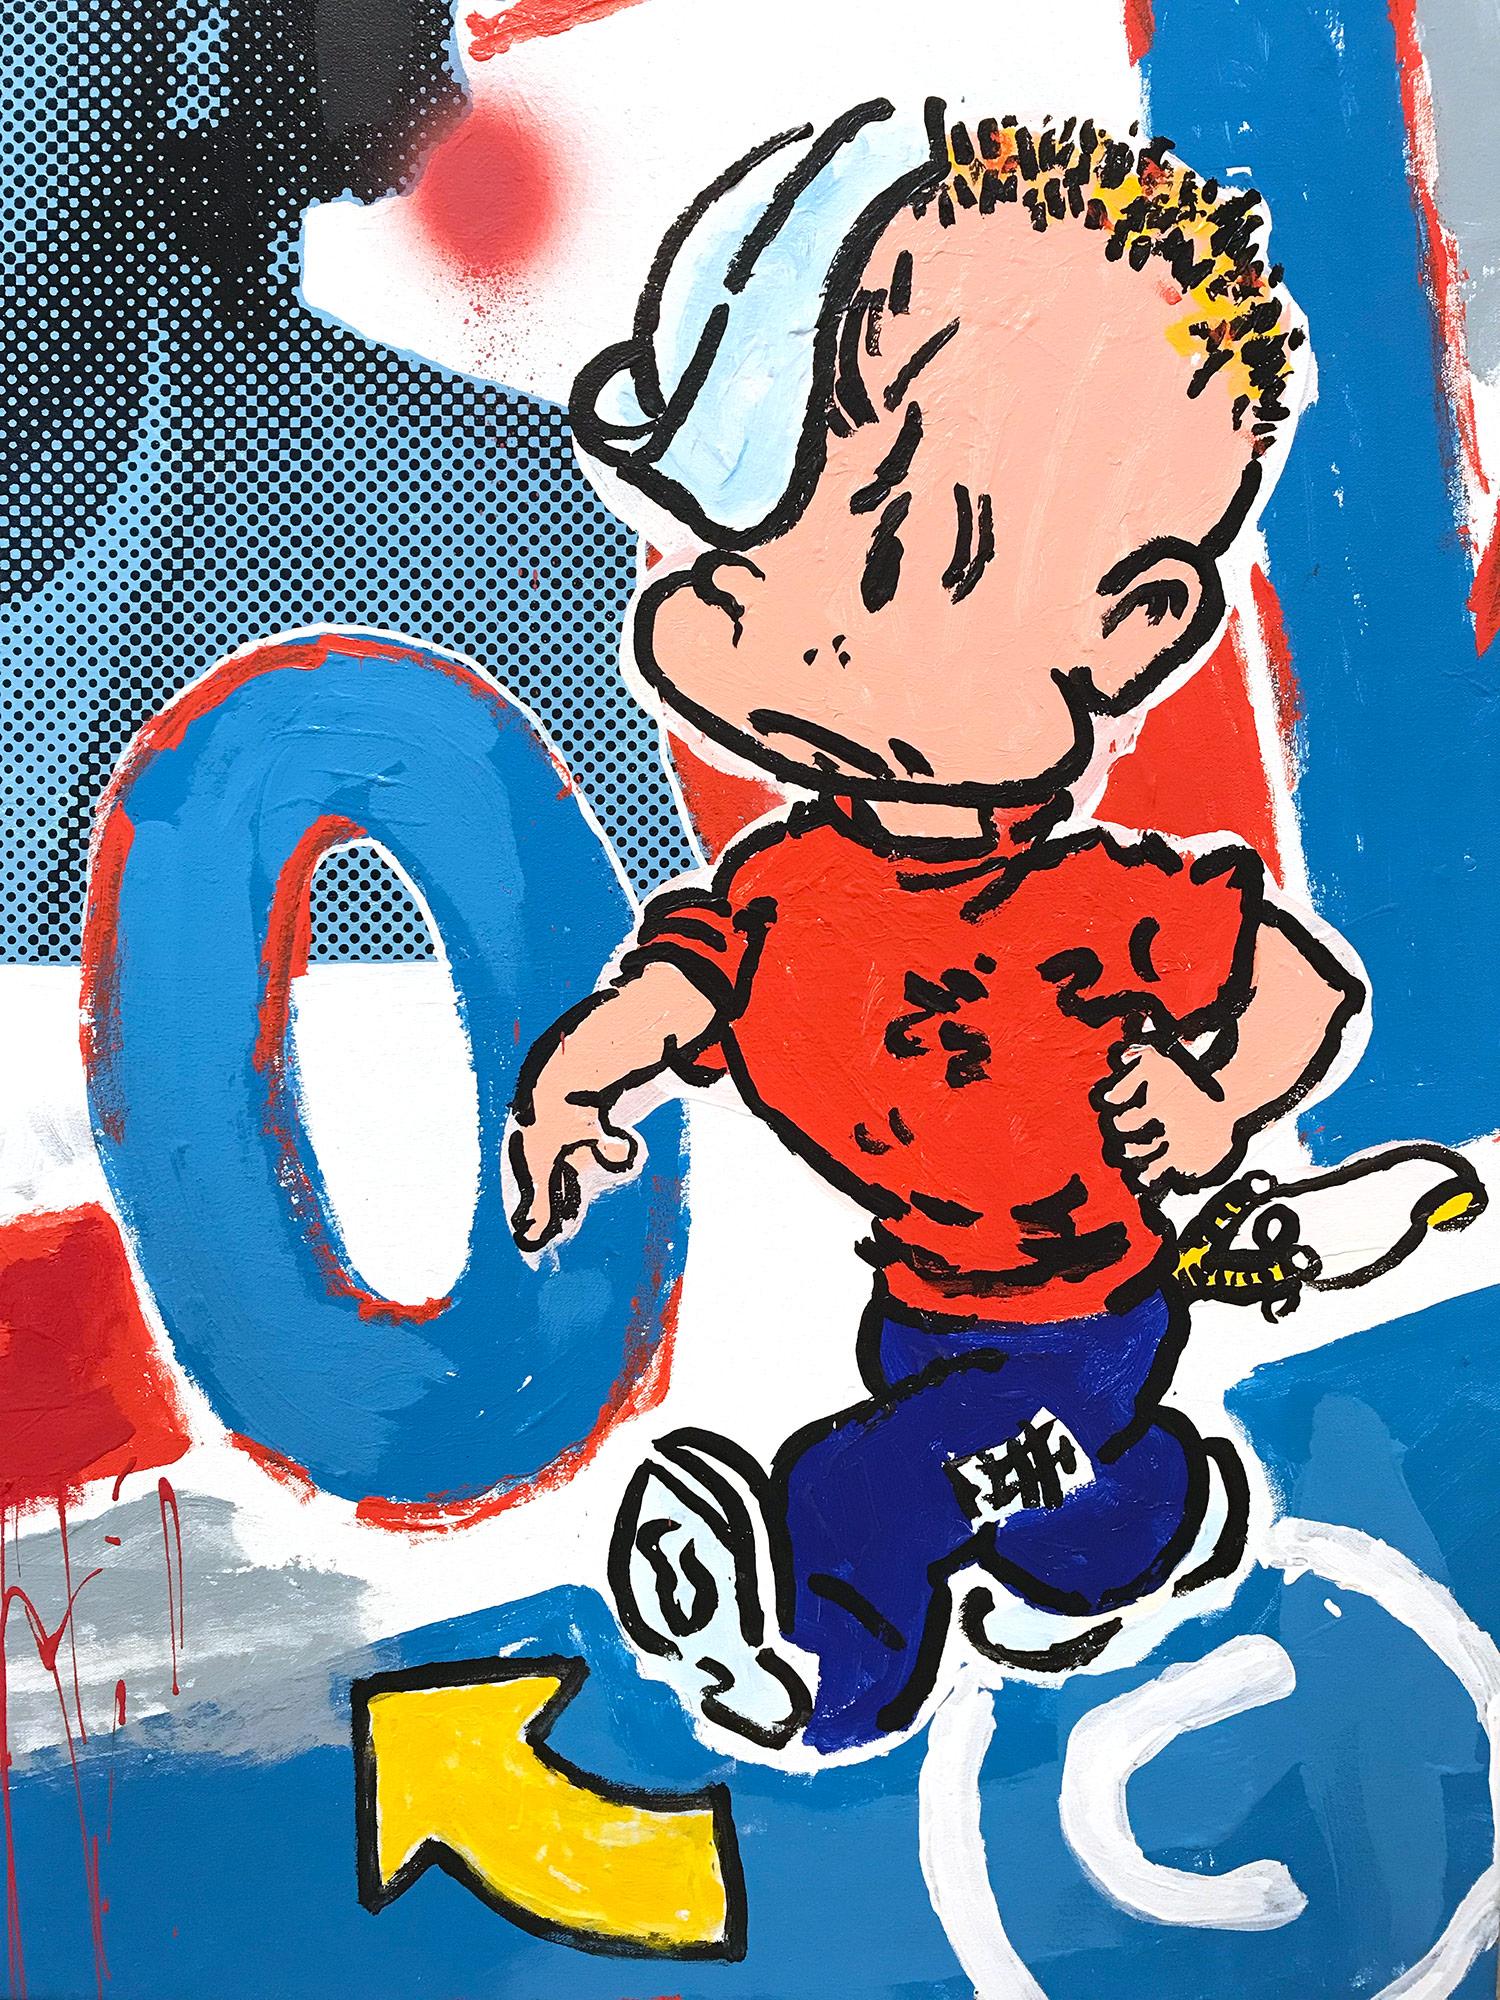 Une pièce pop représentant Basquiat avec un chewing-gum Bazooka. Avec la peinture par empâtement et la sérigraphie, nous sommes attirés par le mouvement, car l'artiste est capable d'impliquer son spectateur avec des contrastes d'ombres et de